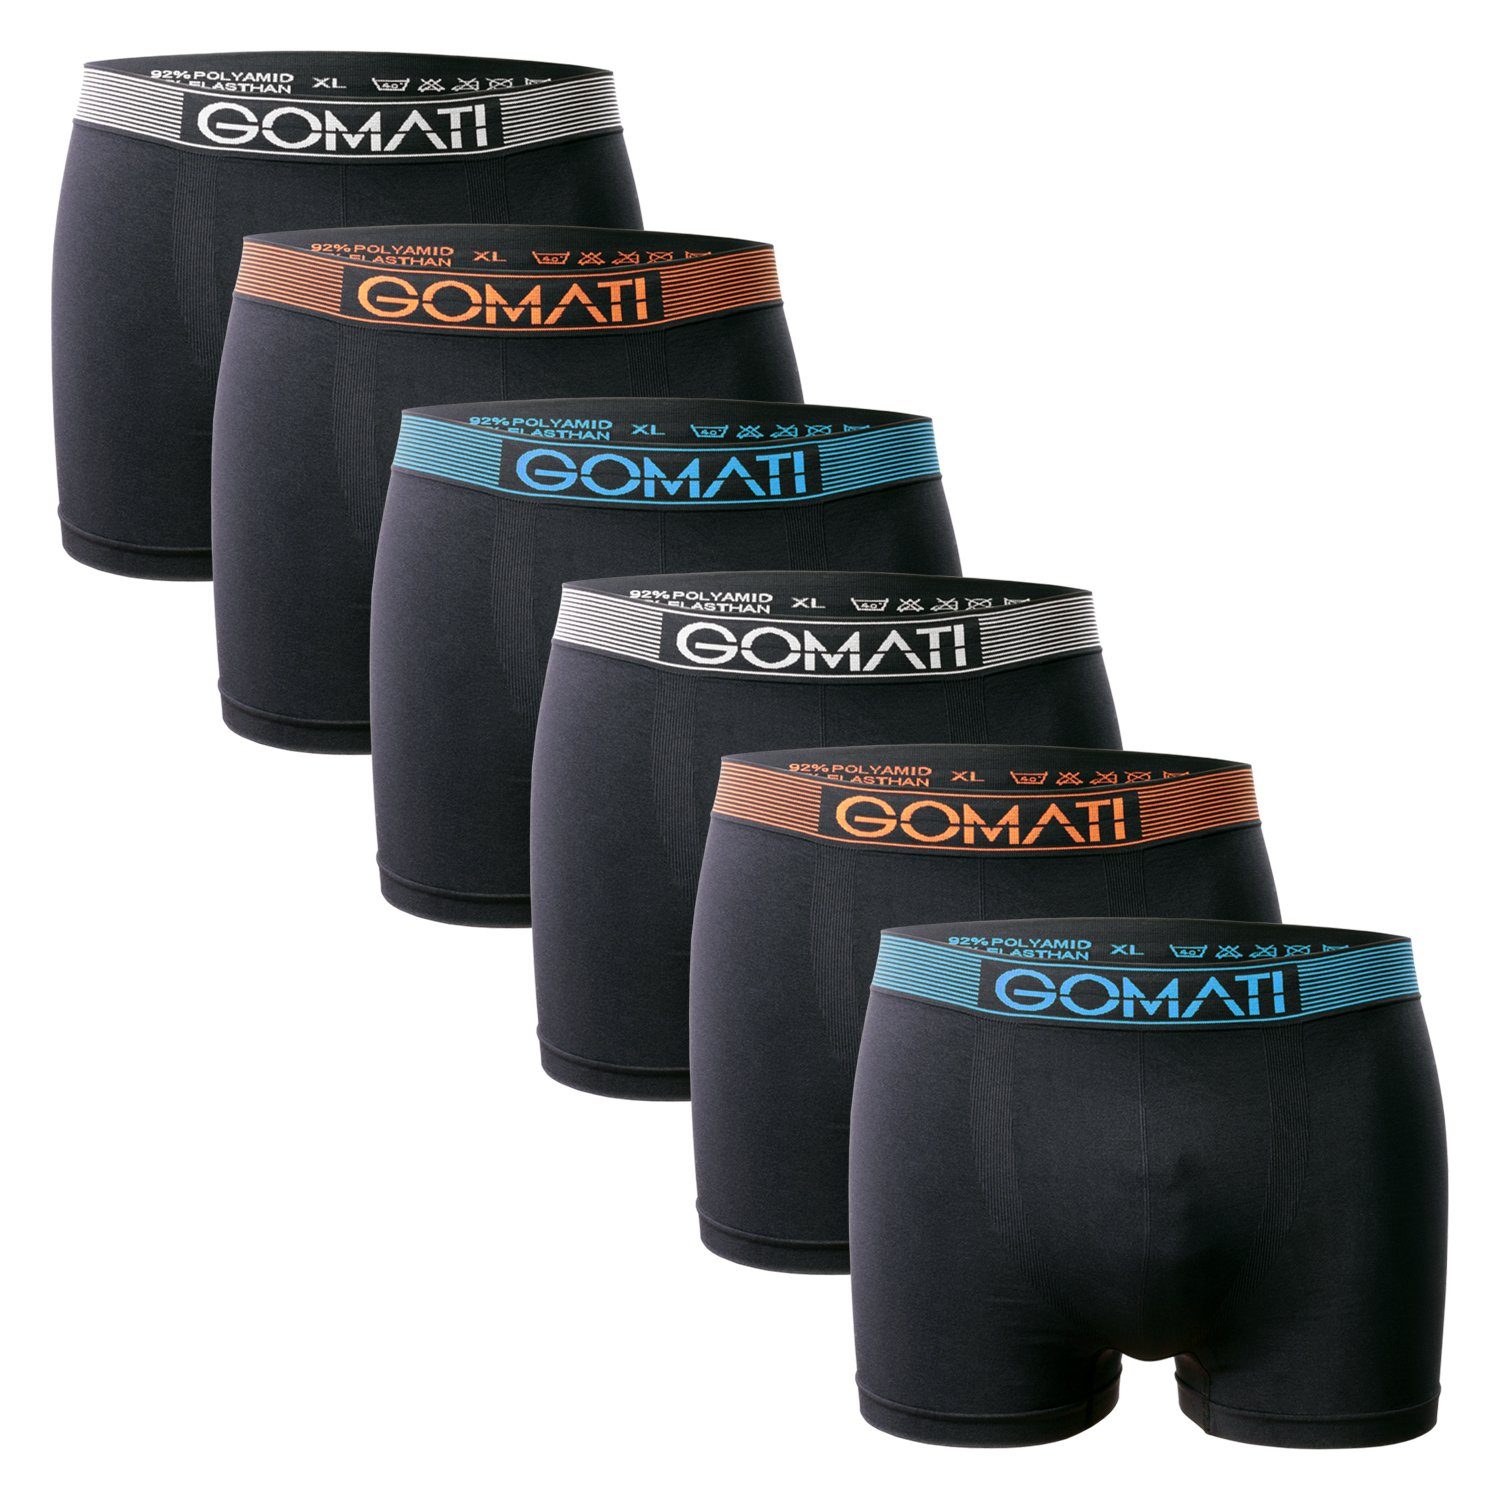 Gomati Boxershorts Herren Seamless Pants (6er Pack) Microfaser-Elasthan Boxershorts Black Mix | Boxershorts